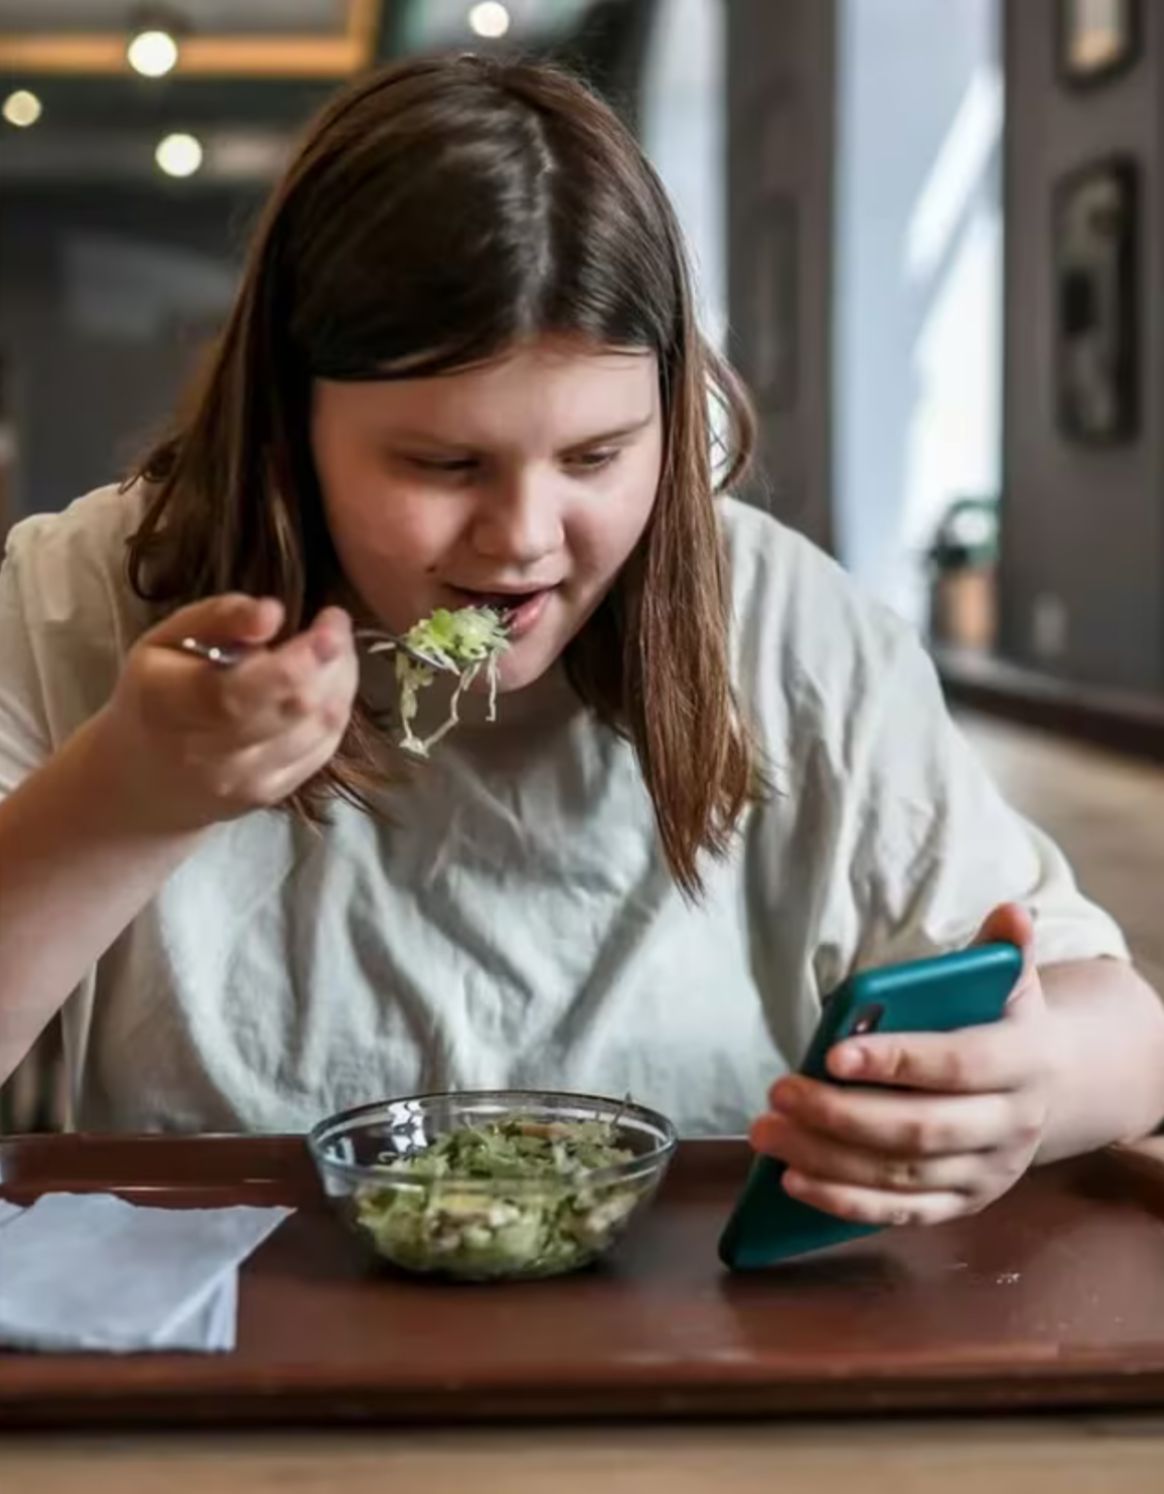 Adolescentes con sobre peso sufren de acoso en redes